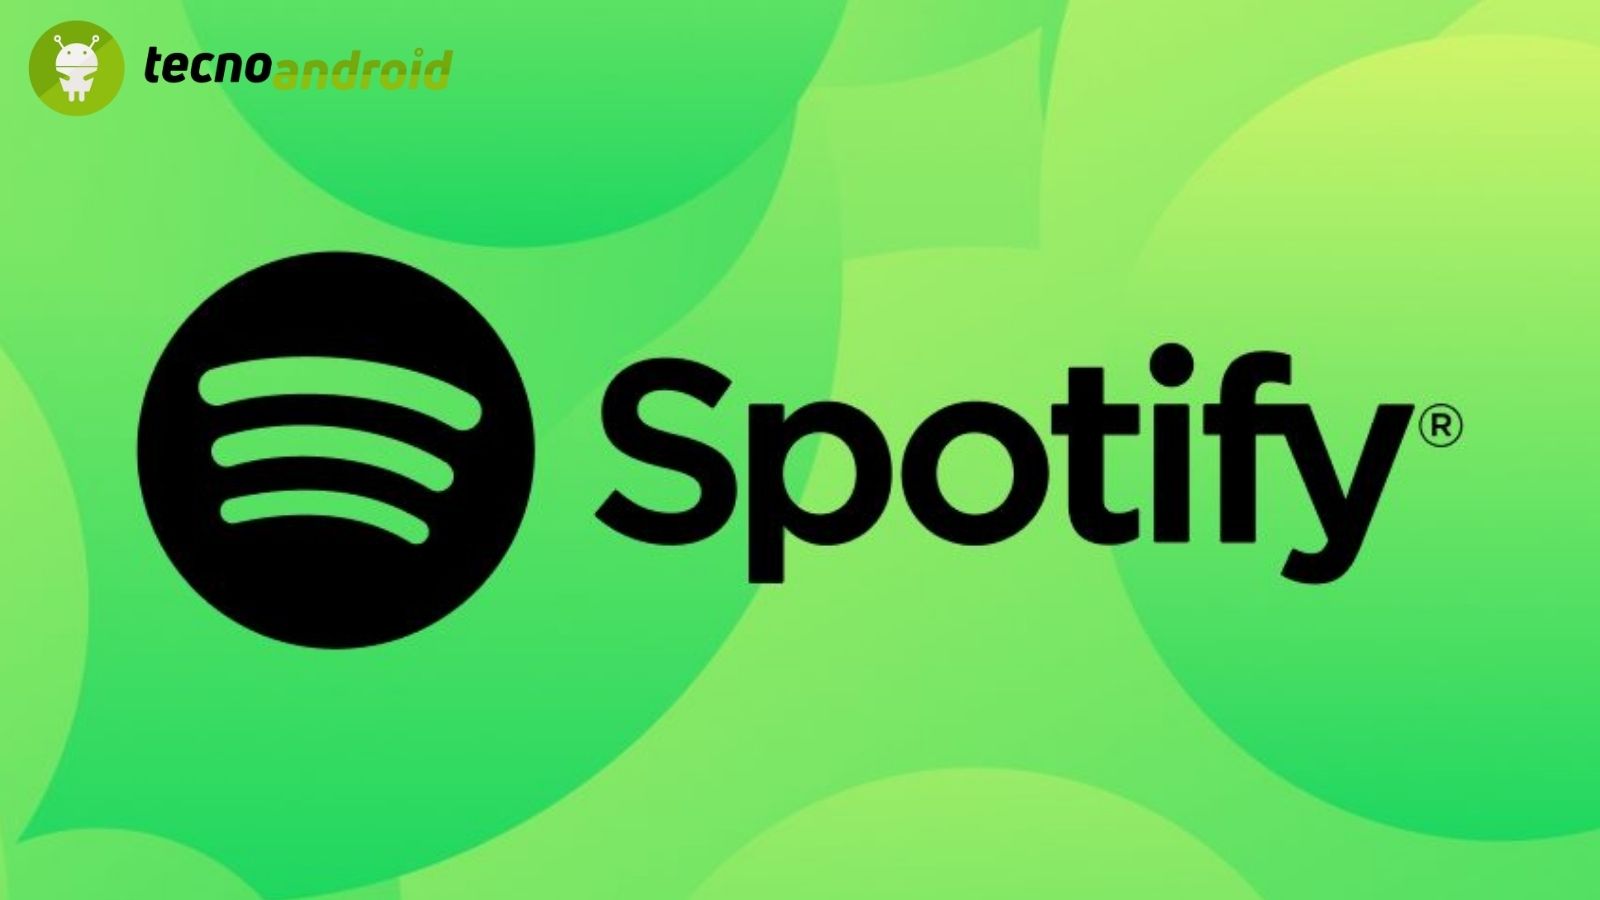 Spotify Cambia: Acquisti diretti da iPhone e novità negli Audiolibri